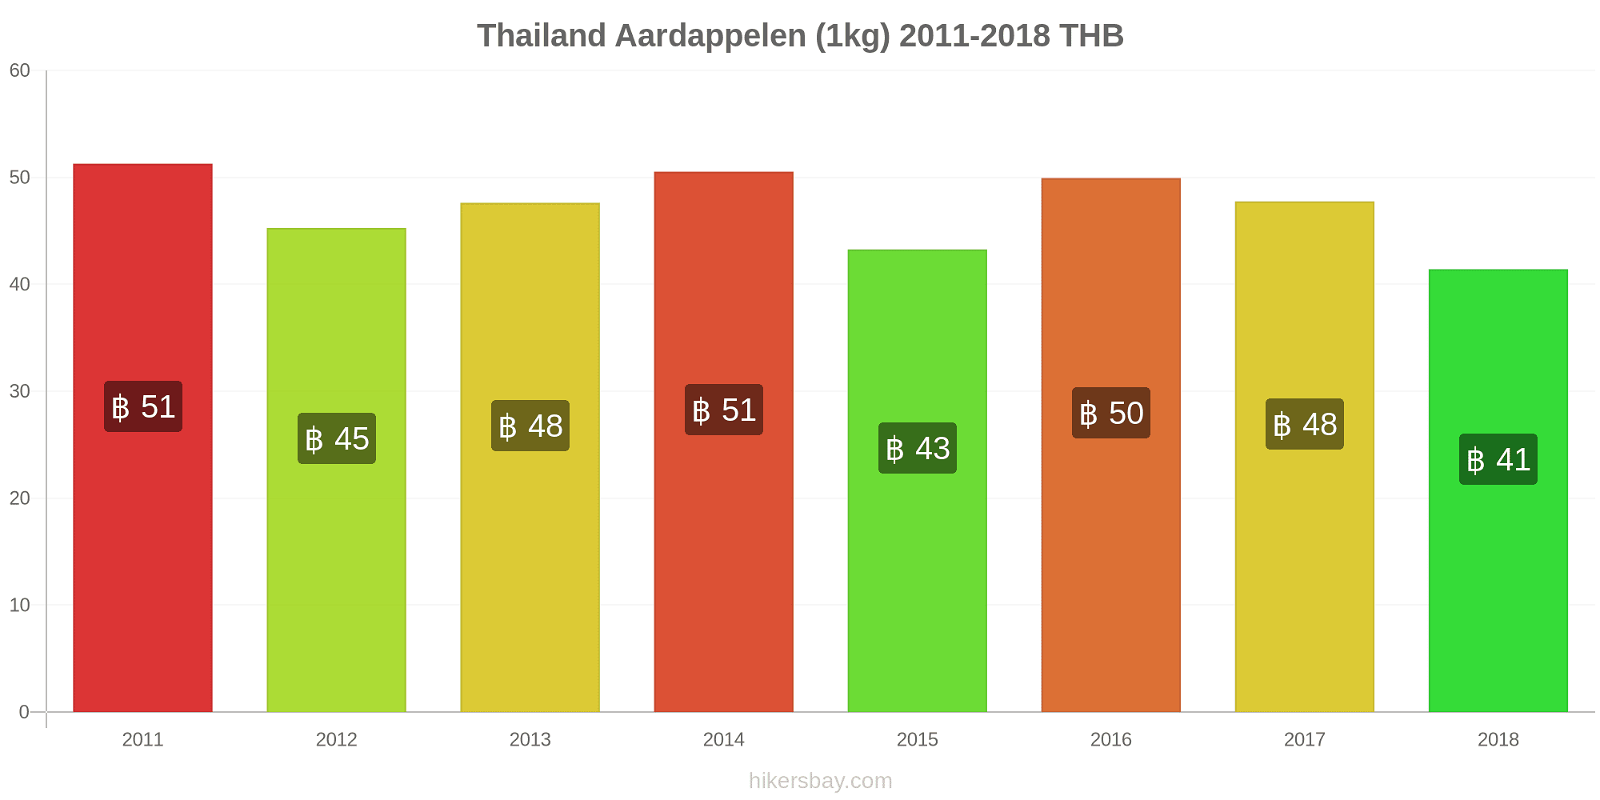 Thailand prijswijzigingen Aardappelen (1kg) hikersbay.com